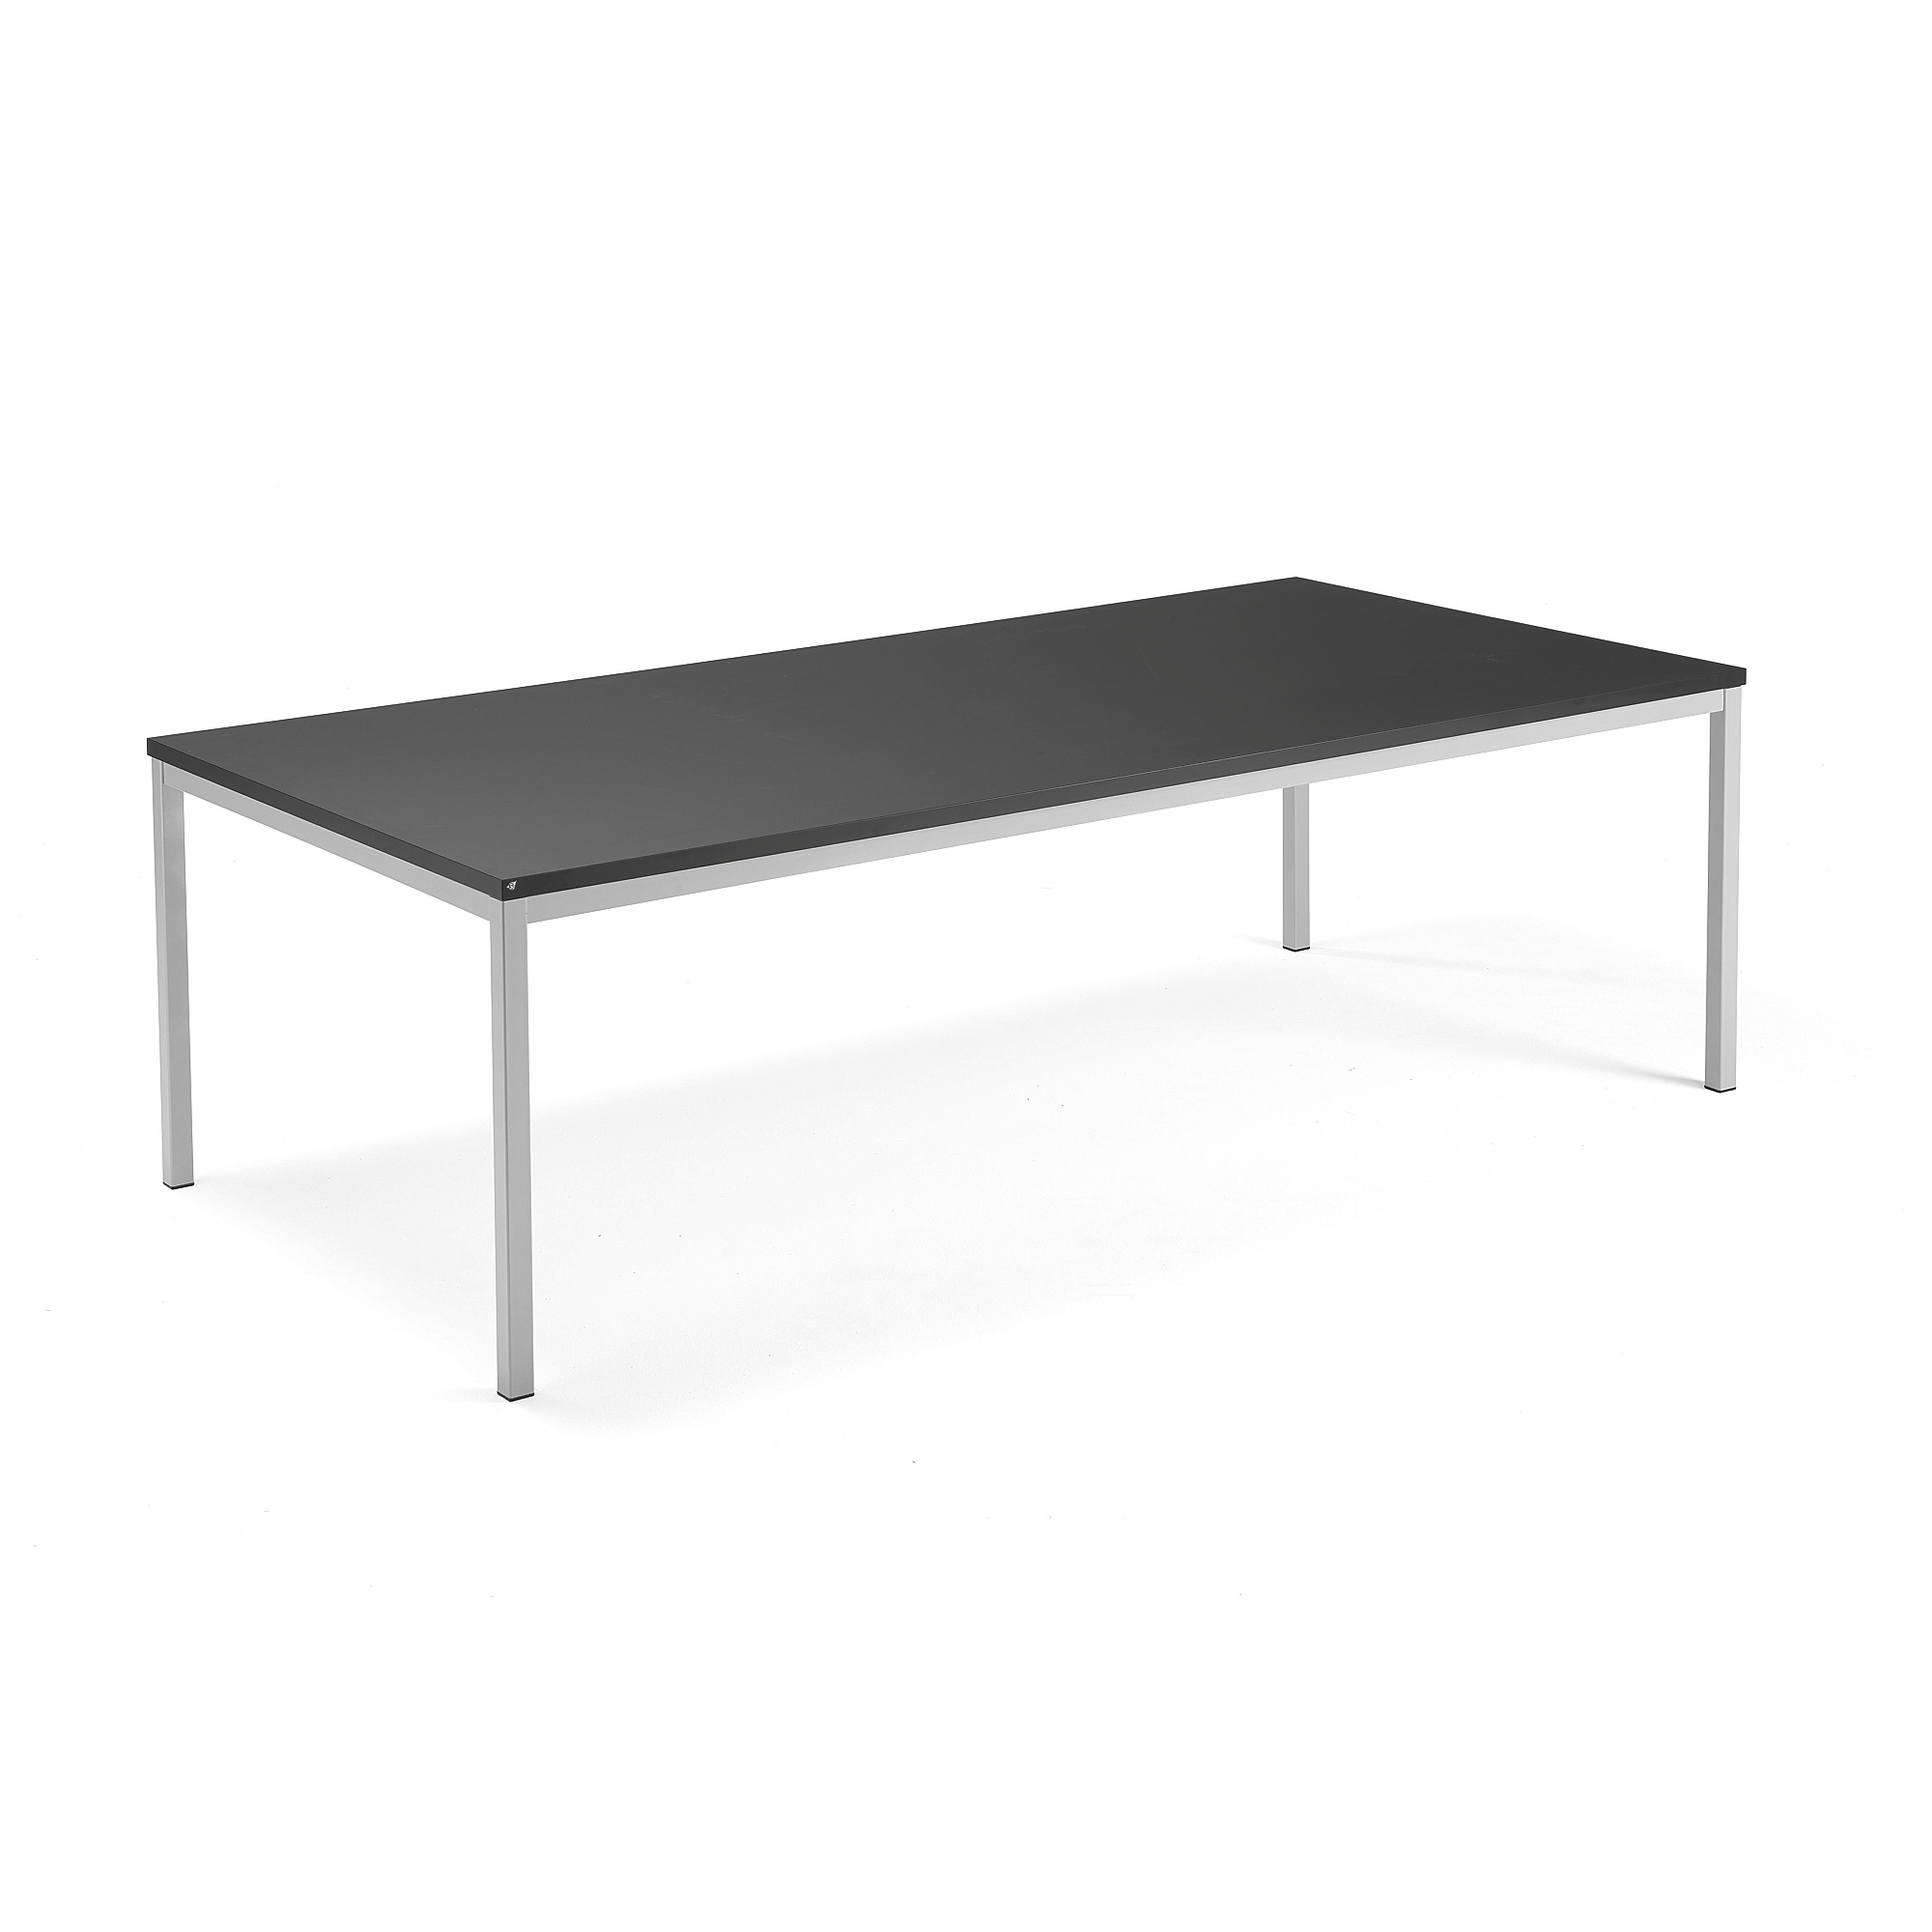 Jednací stůl QBUS, 2400x1200 mm, 4 nohy, stříbrný rám, černá